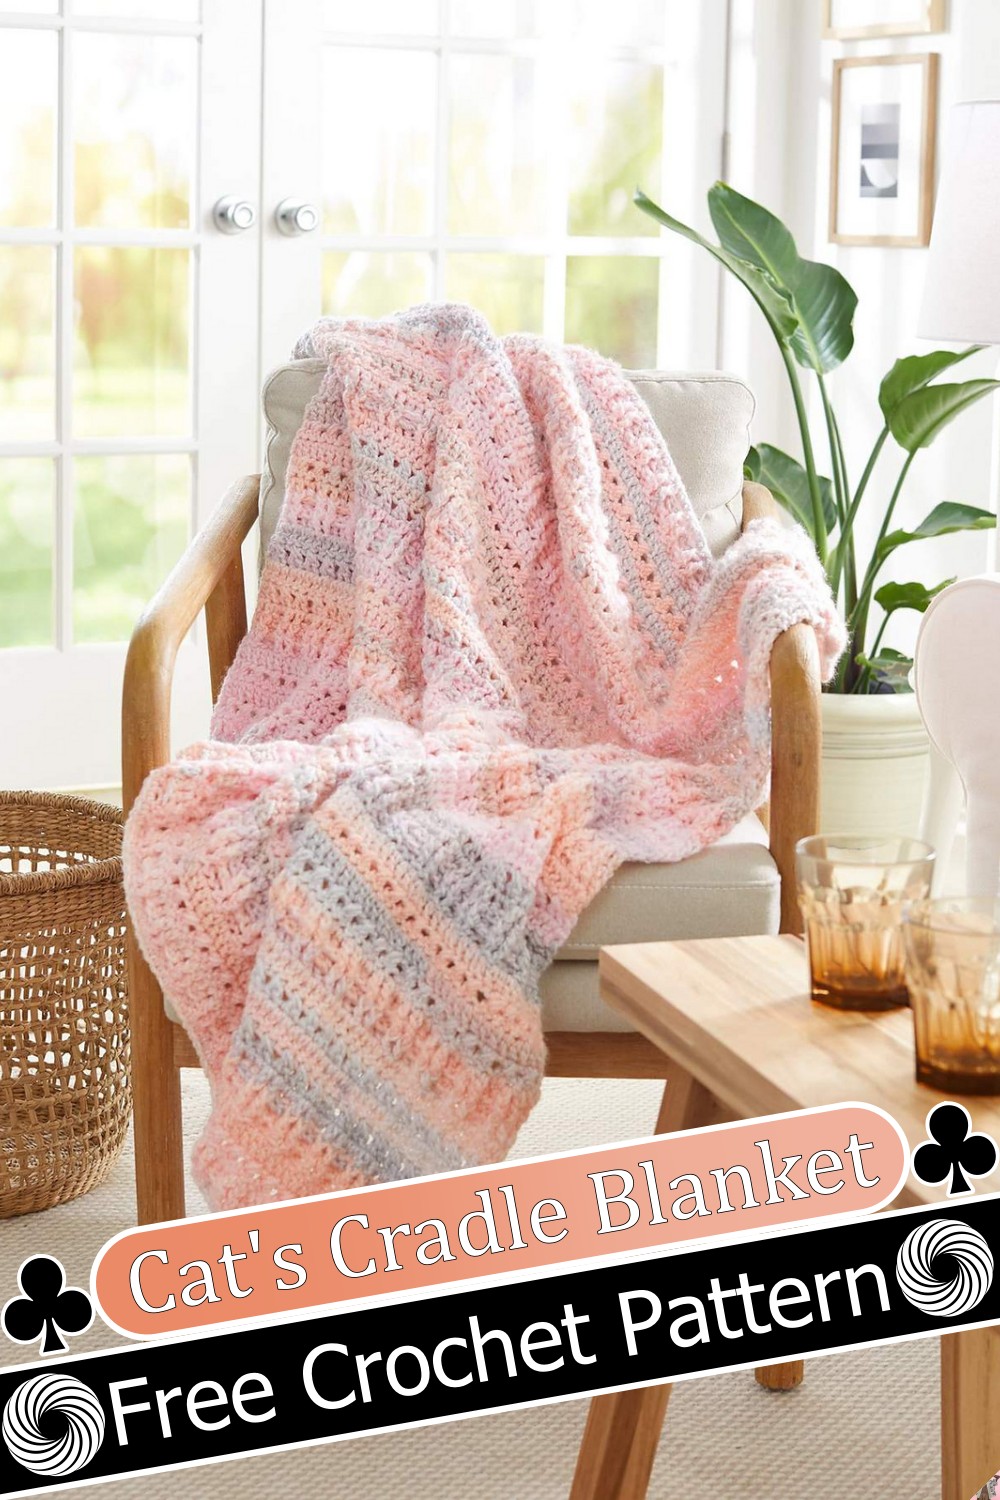 Cat's Cradle Blanket